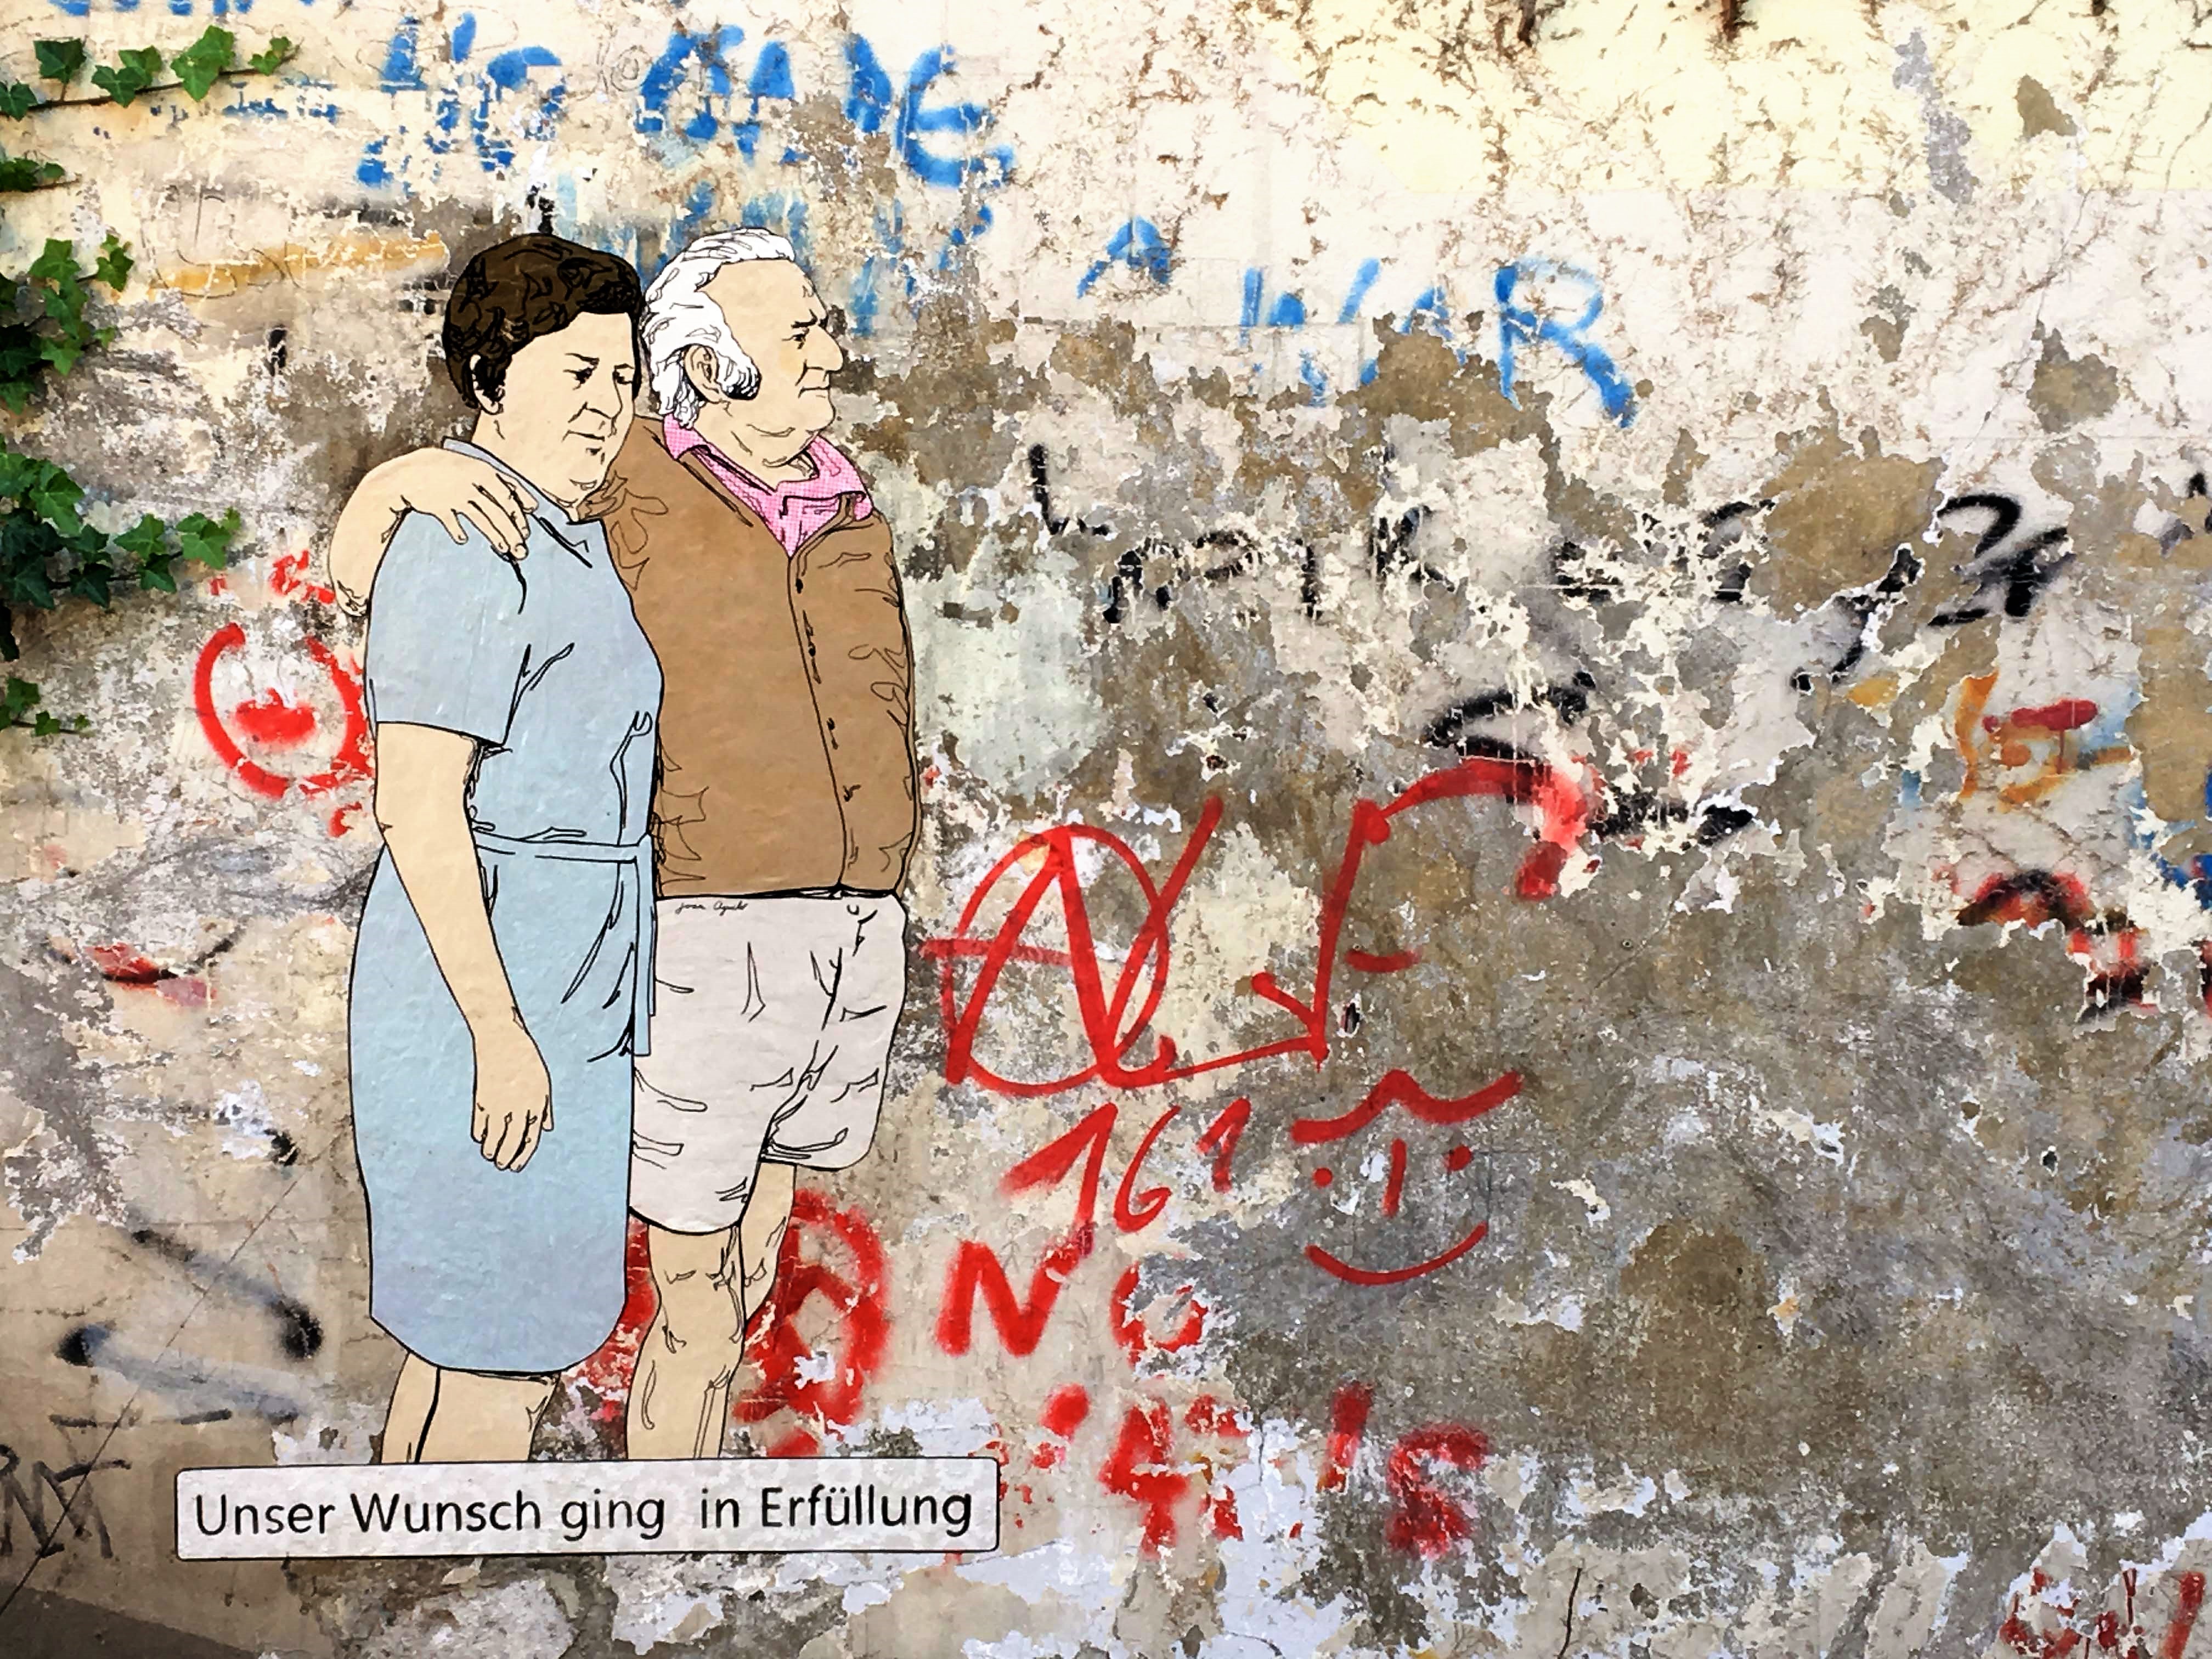 Das lebensgroße Stencil von Juan Aguiló zeigt eine älteres Paar